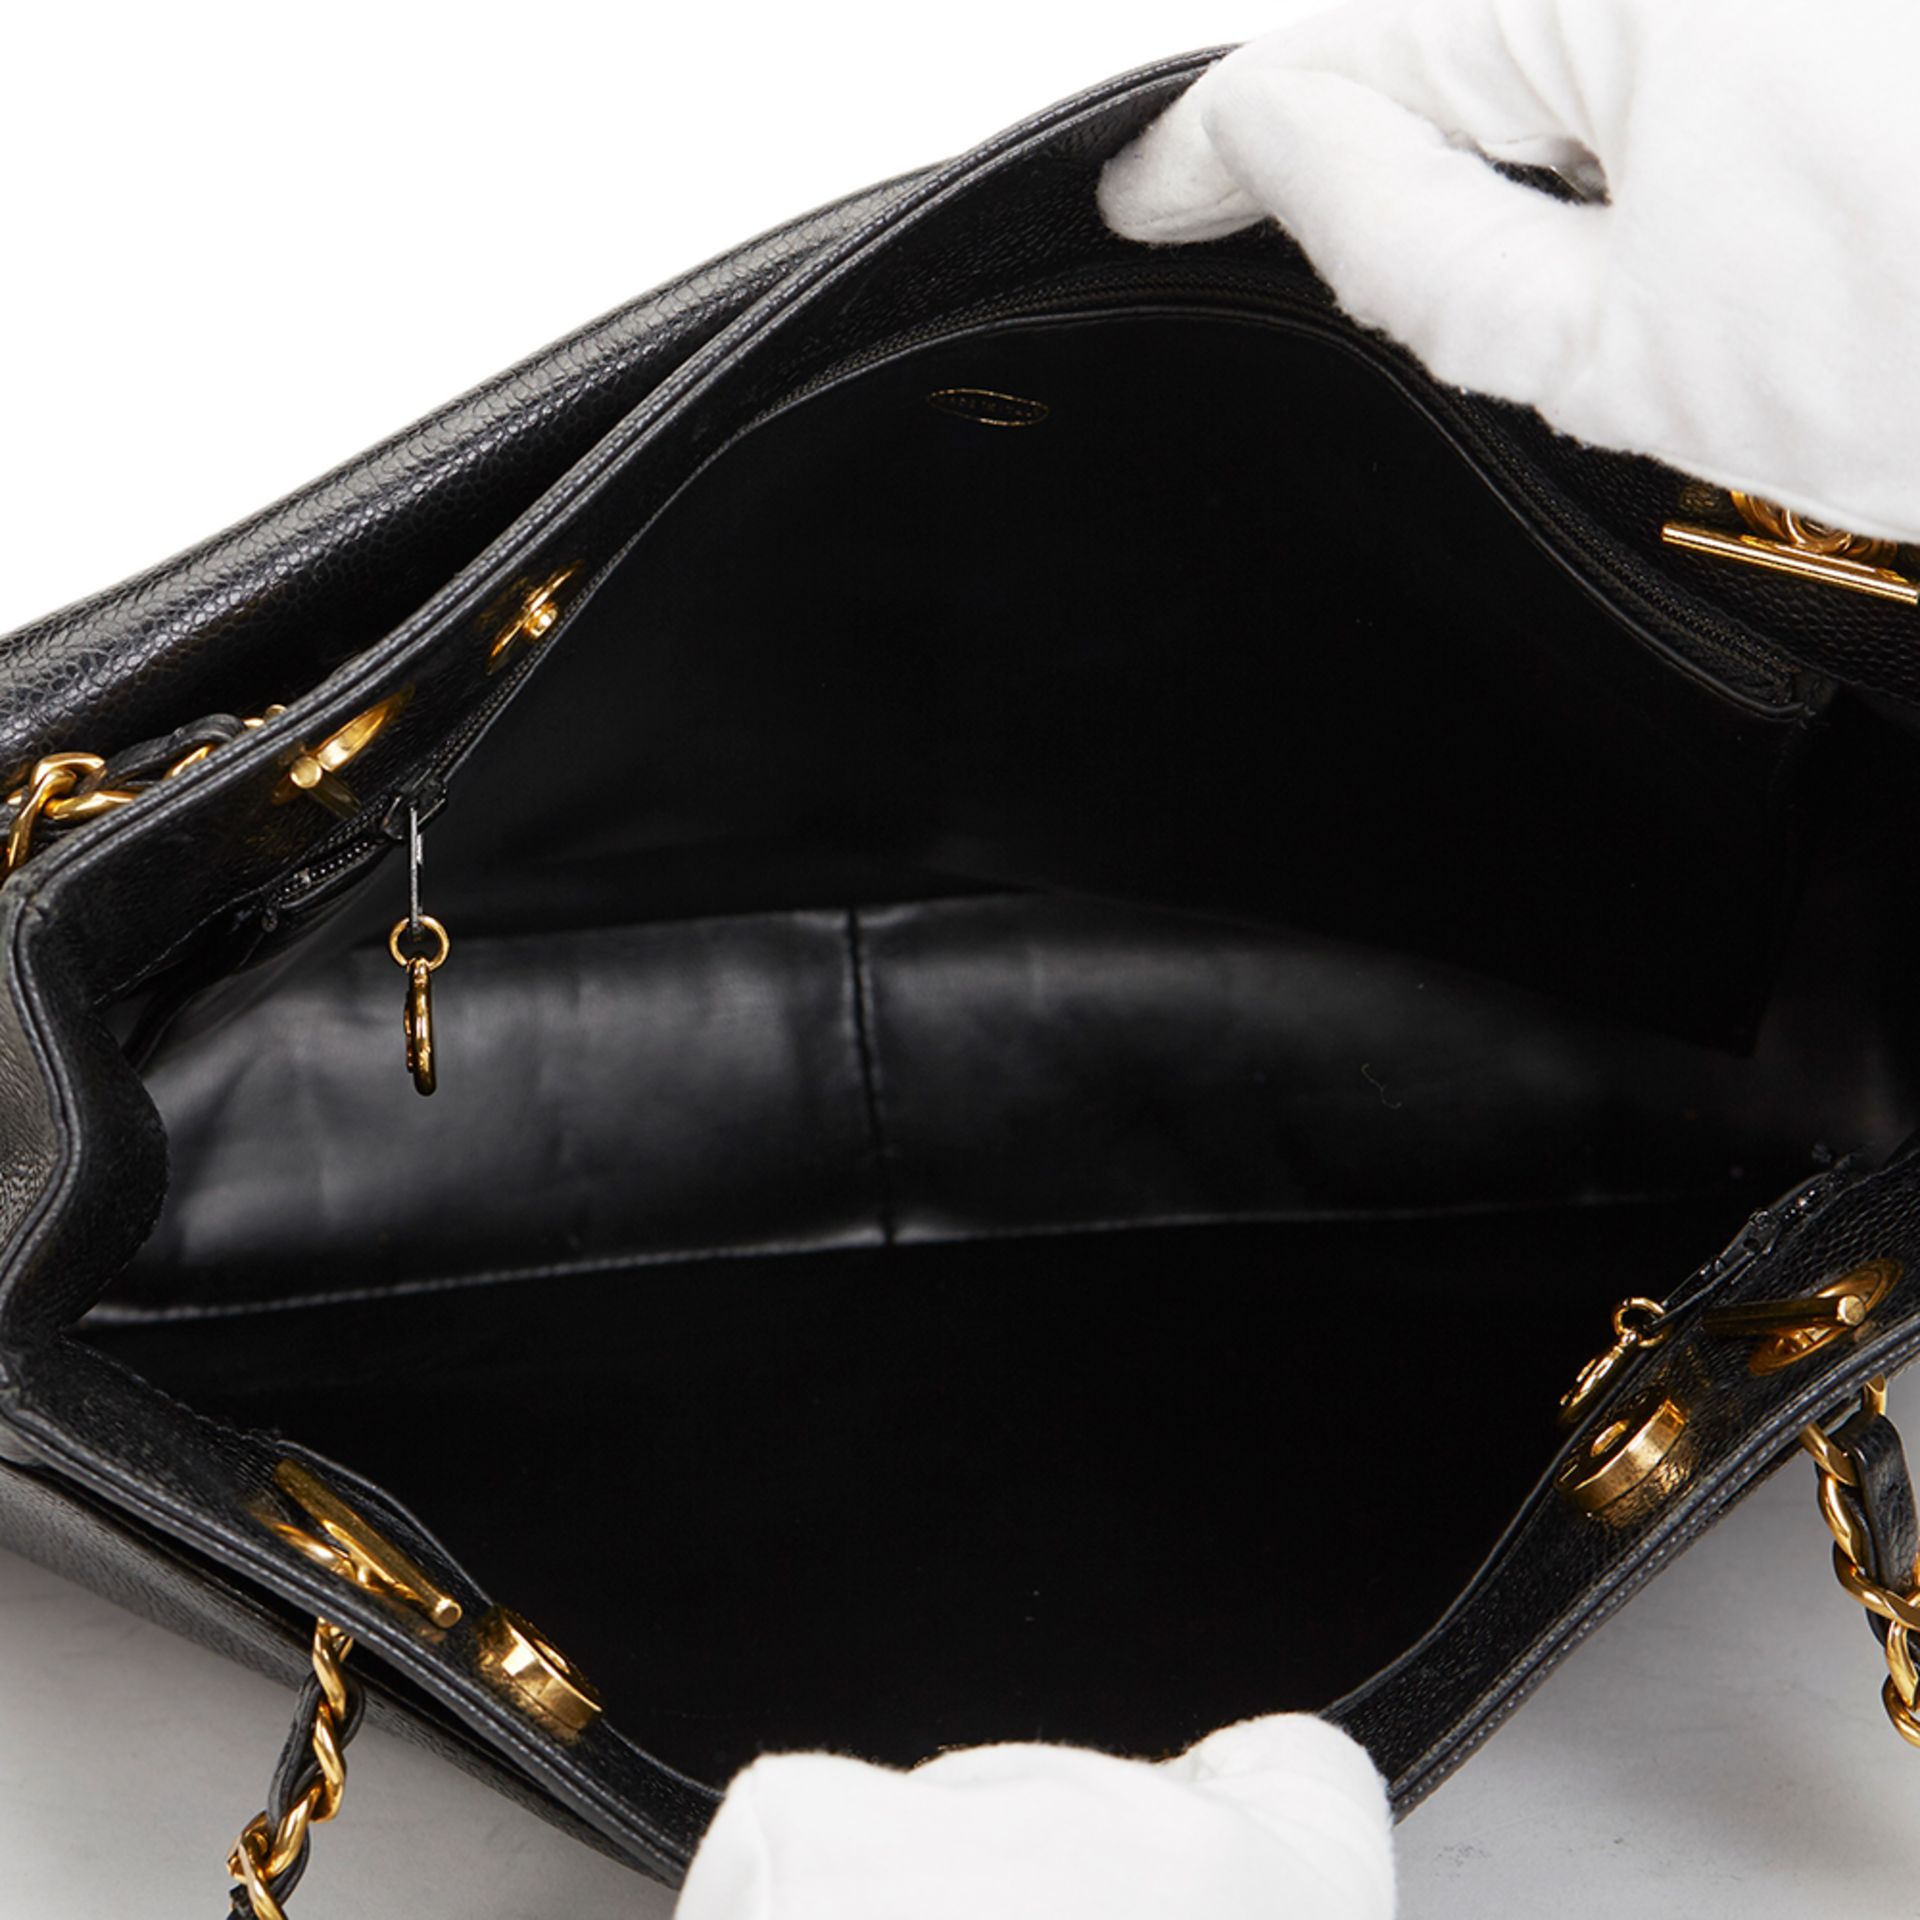 Black Caviar Leather Vintage Classic Shoulder Bag - Image 8 of 11